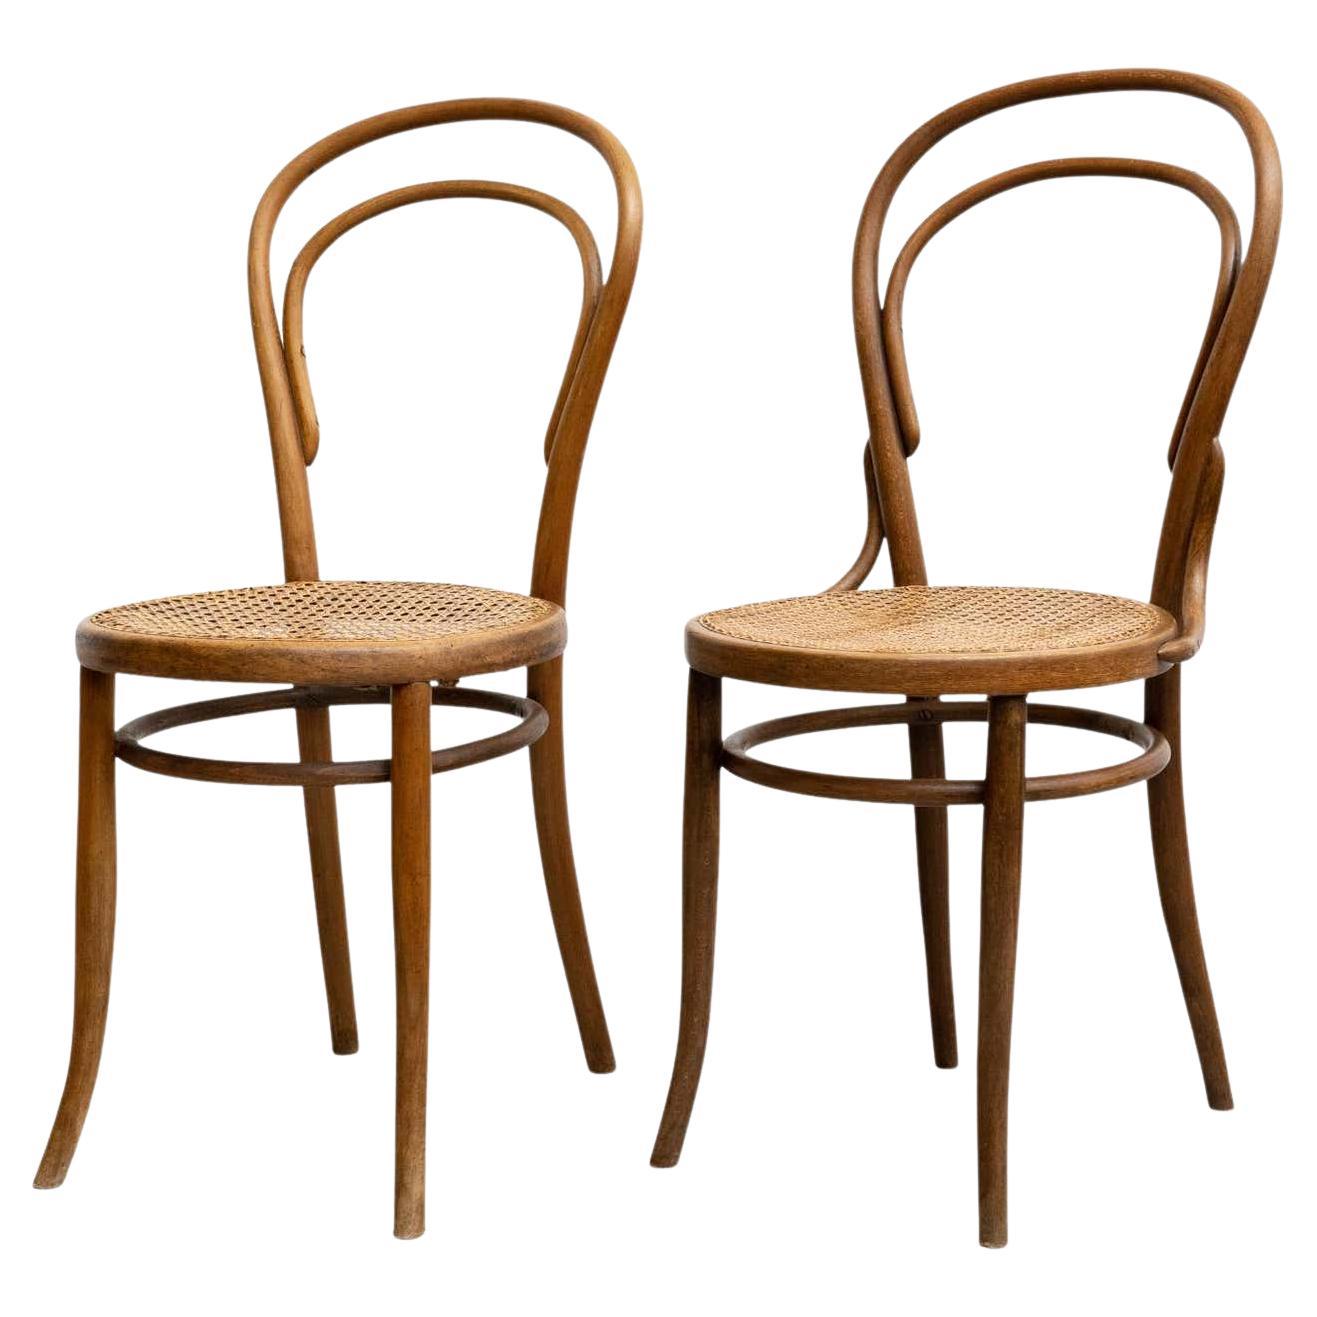 Ensemble de deux chaises en bois cintré et rotin de style J&J Kohn, datant d'environ 1930